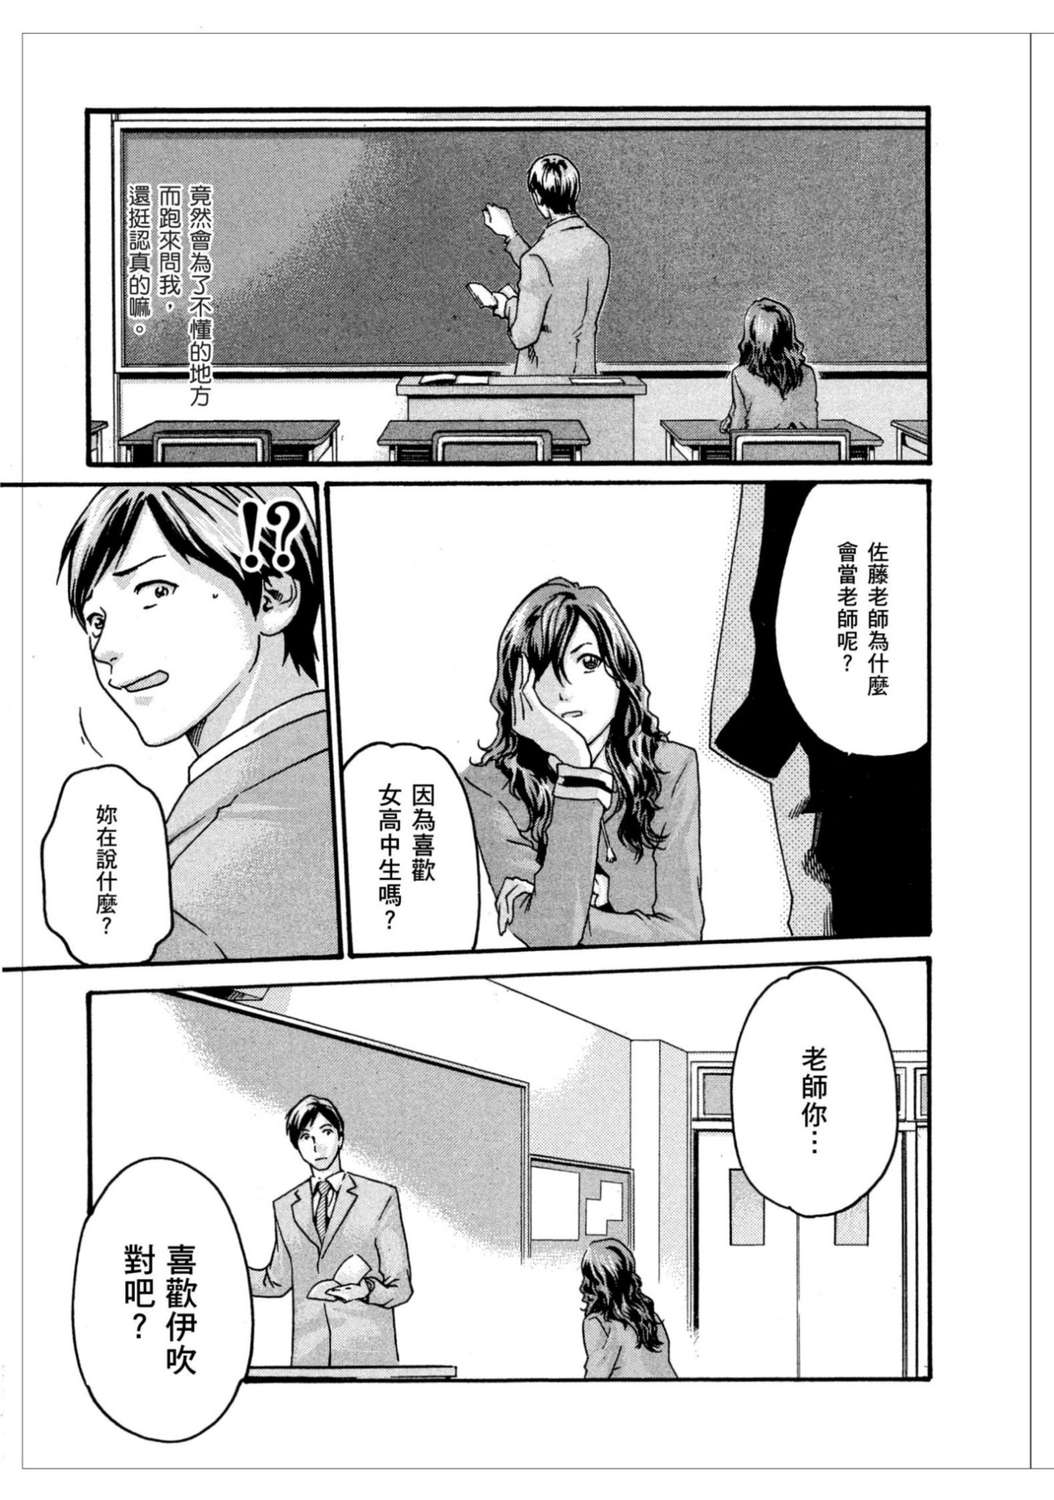 妄想老师漫画单行本 第1集-漫画DB